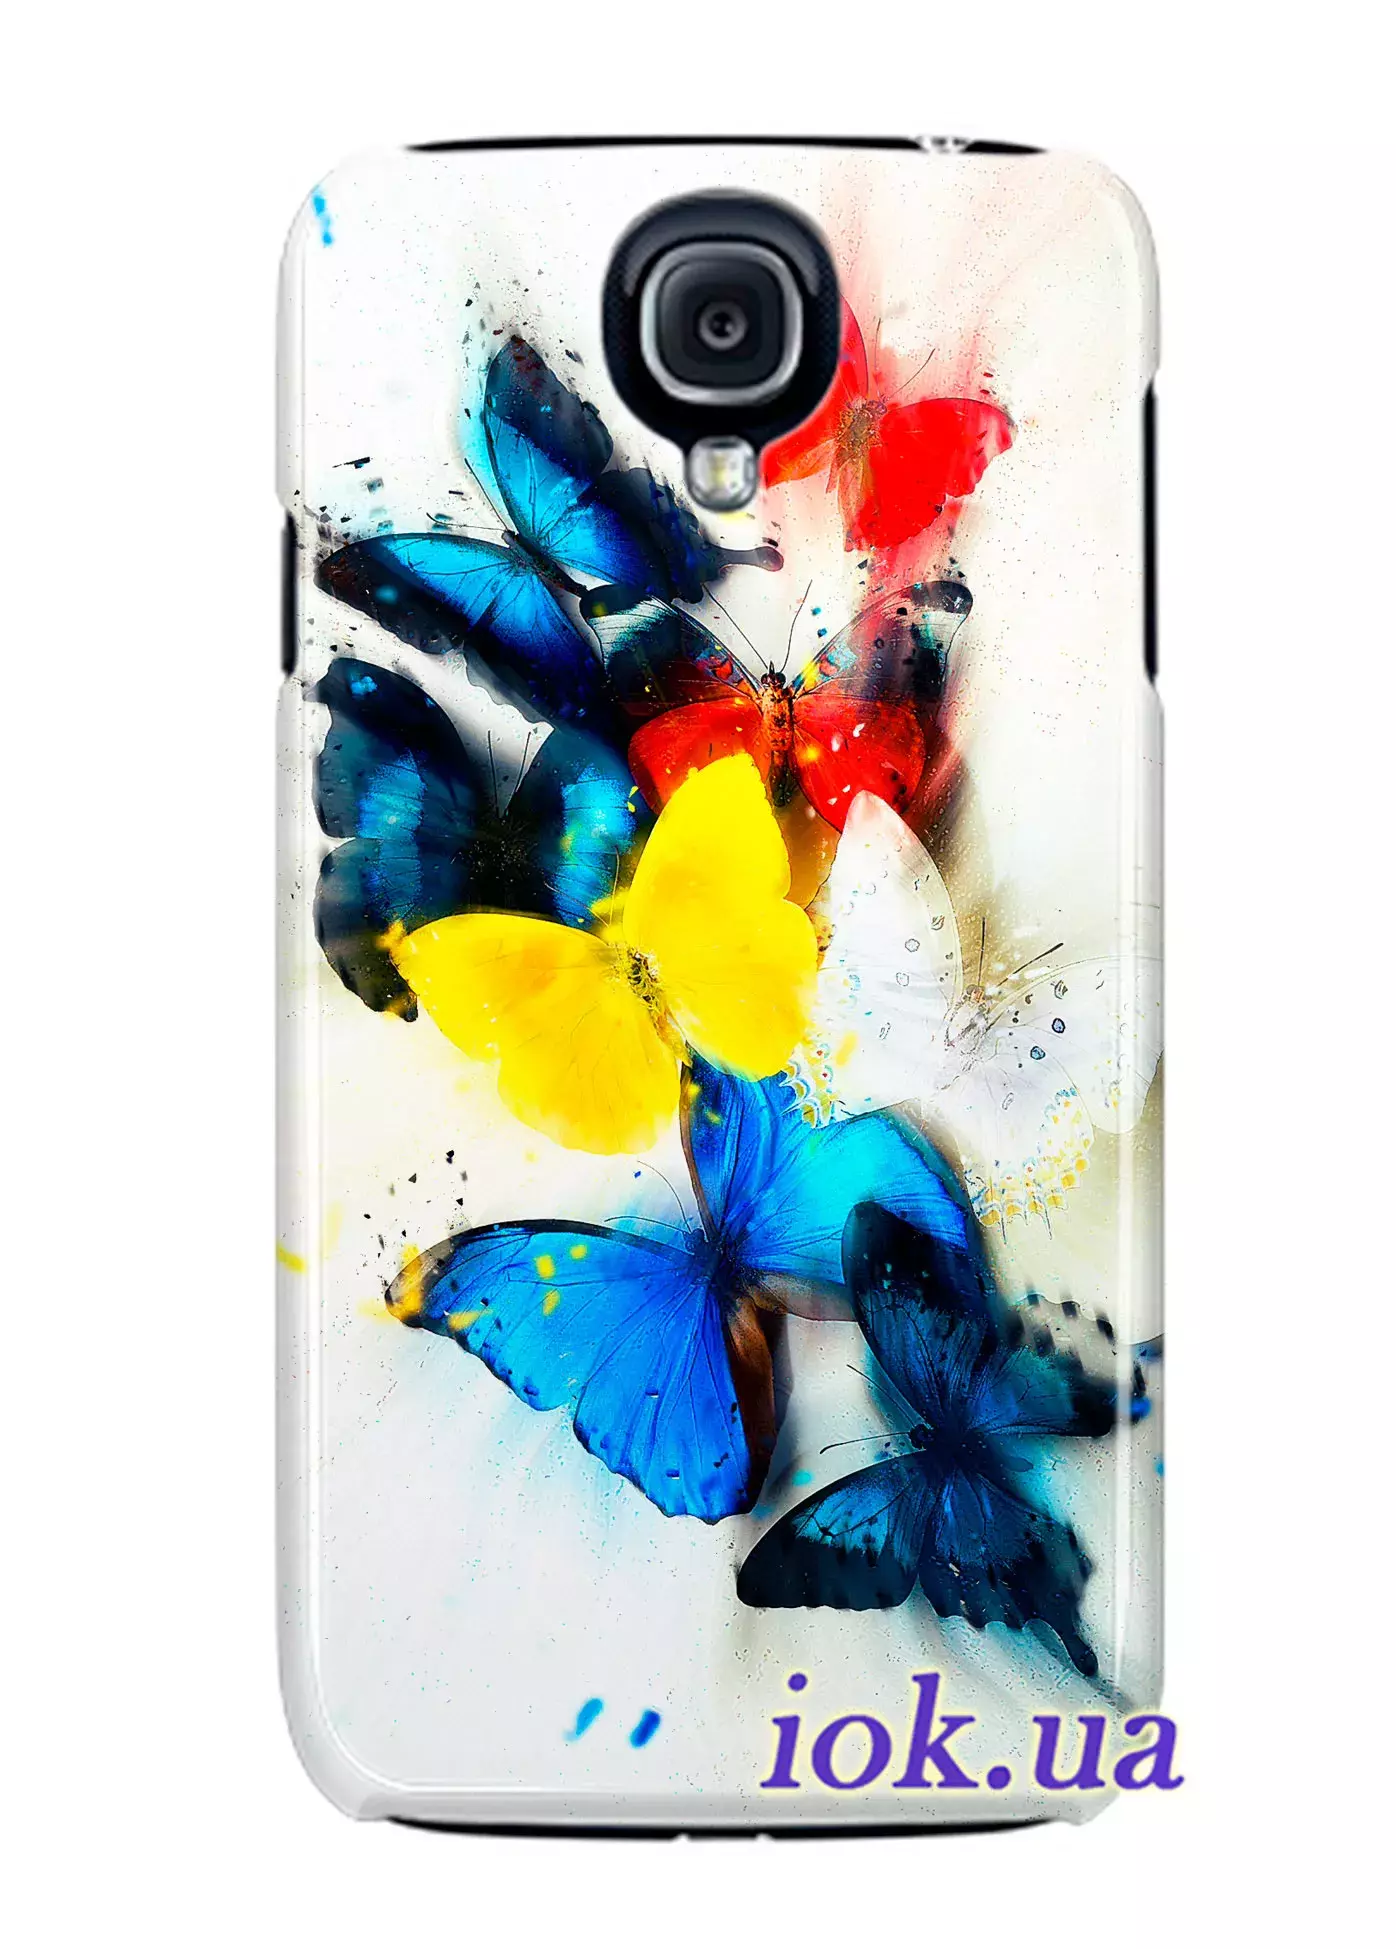 Чехол для Galaxy S4 Black Edition - Цветные мотыльки